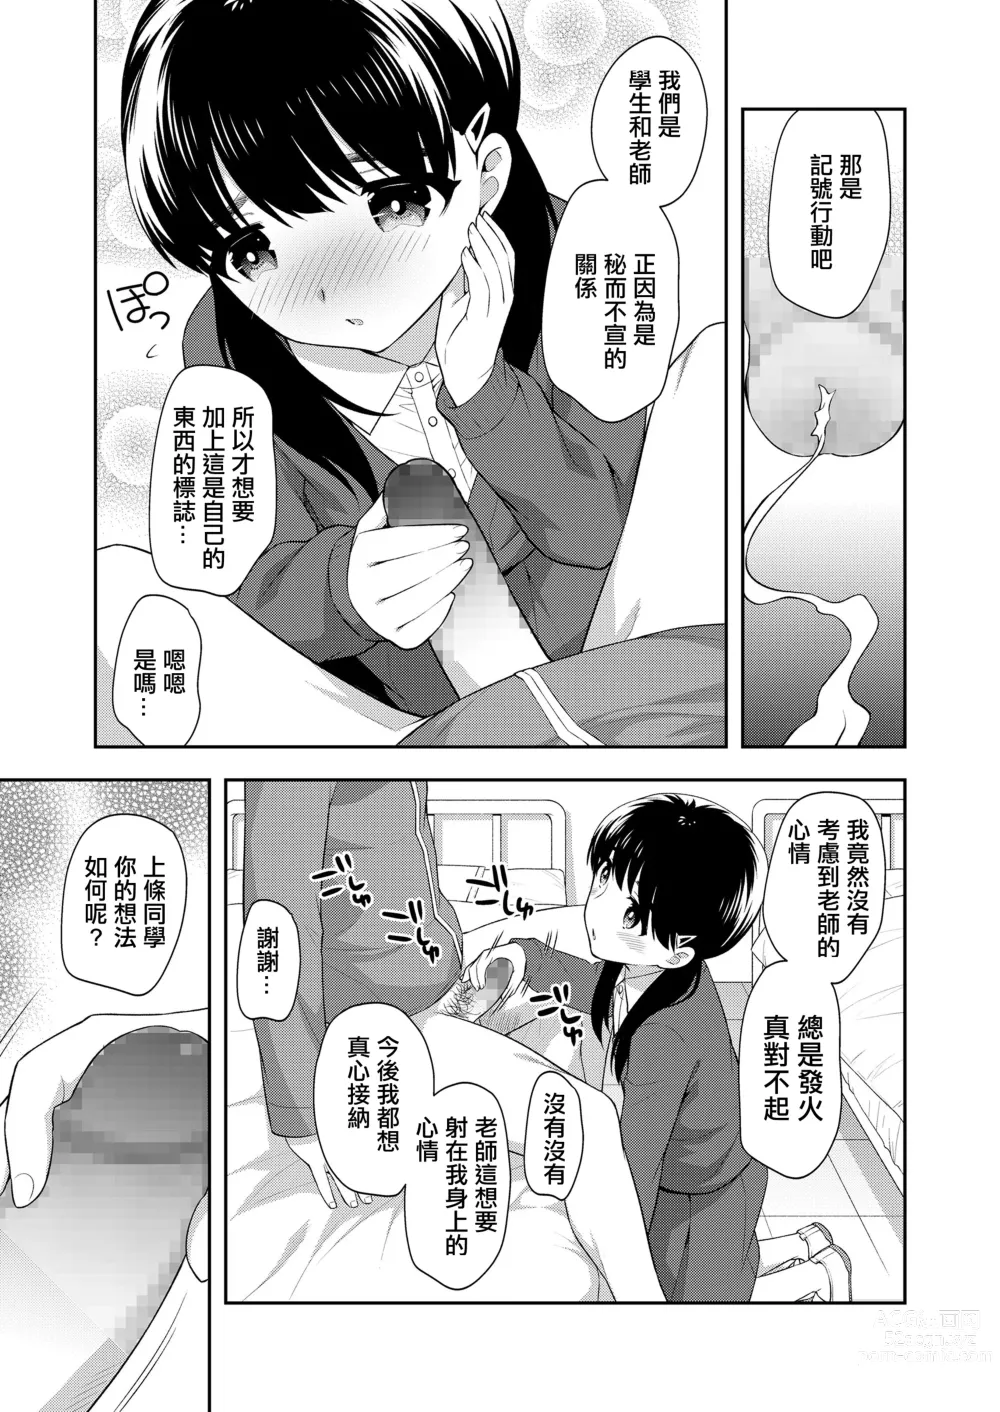 Page 7 of manga Sensei no Iinari